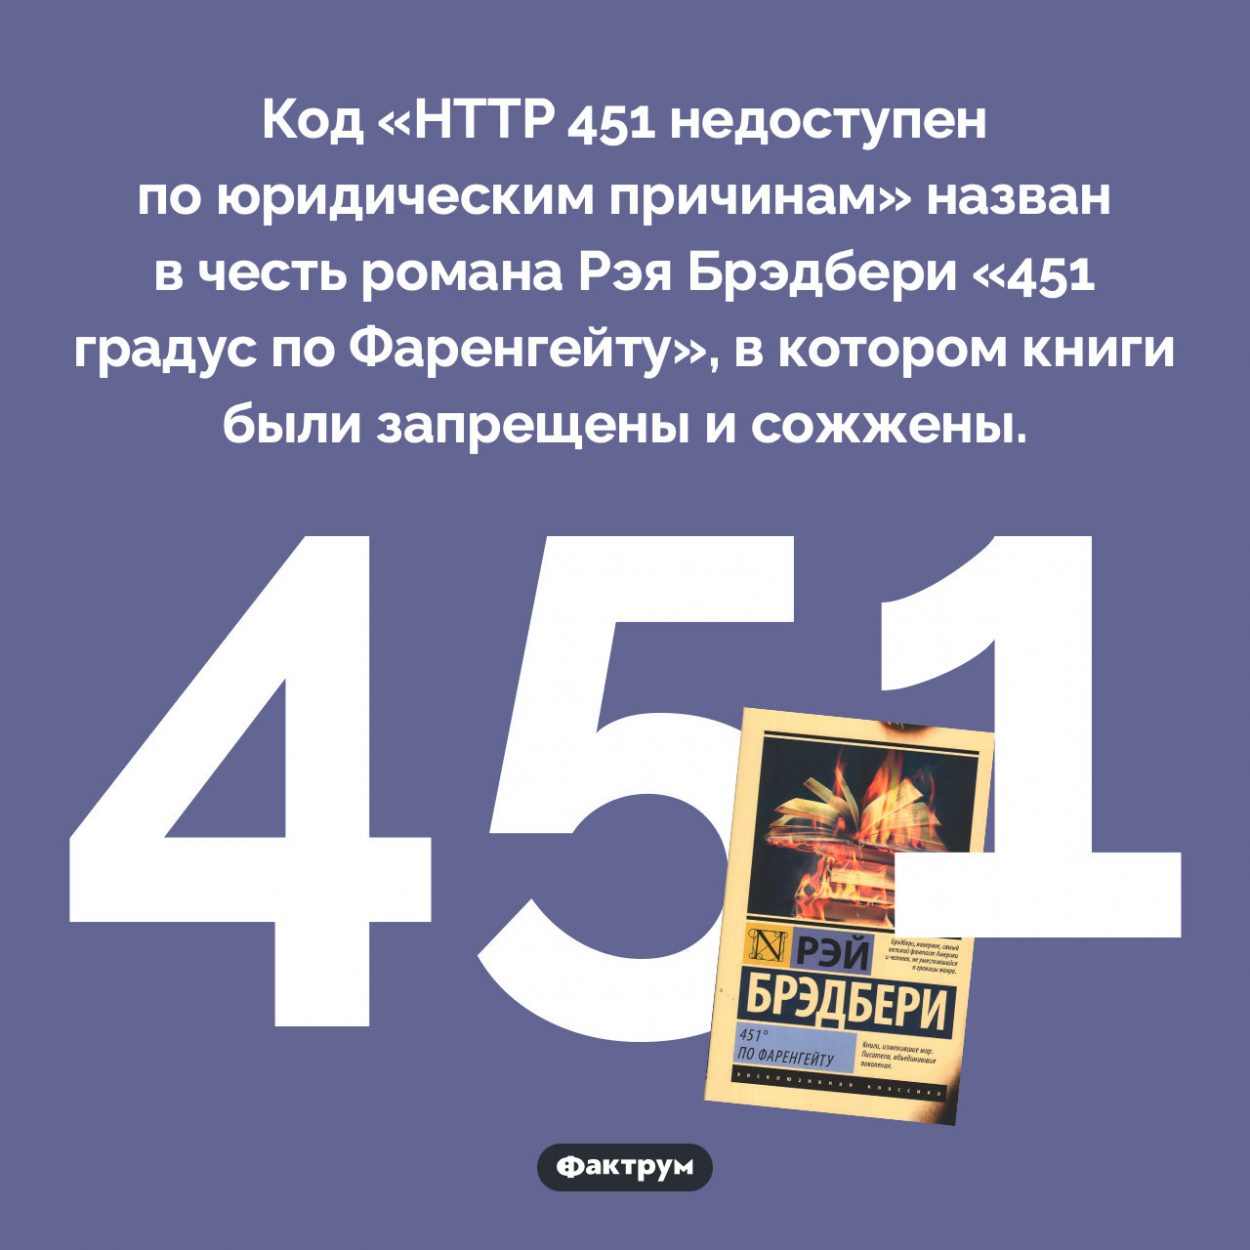 Почему код HTTP 451 так называется. Код «HTTP 451 недоступен по юридическим причинам» назван в честь романа Рэя Брэдбери «451 градус по Фаренгейту», в котором книги были запрещены и сожжены.